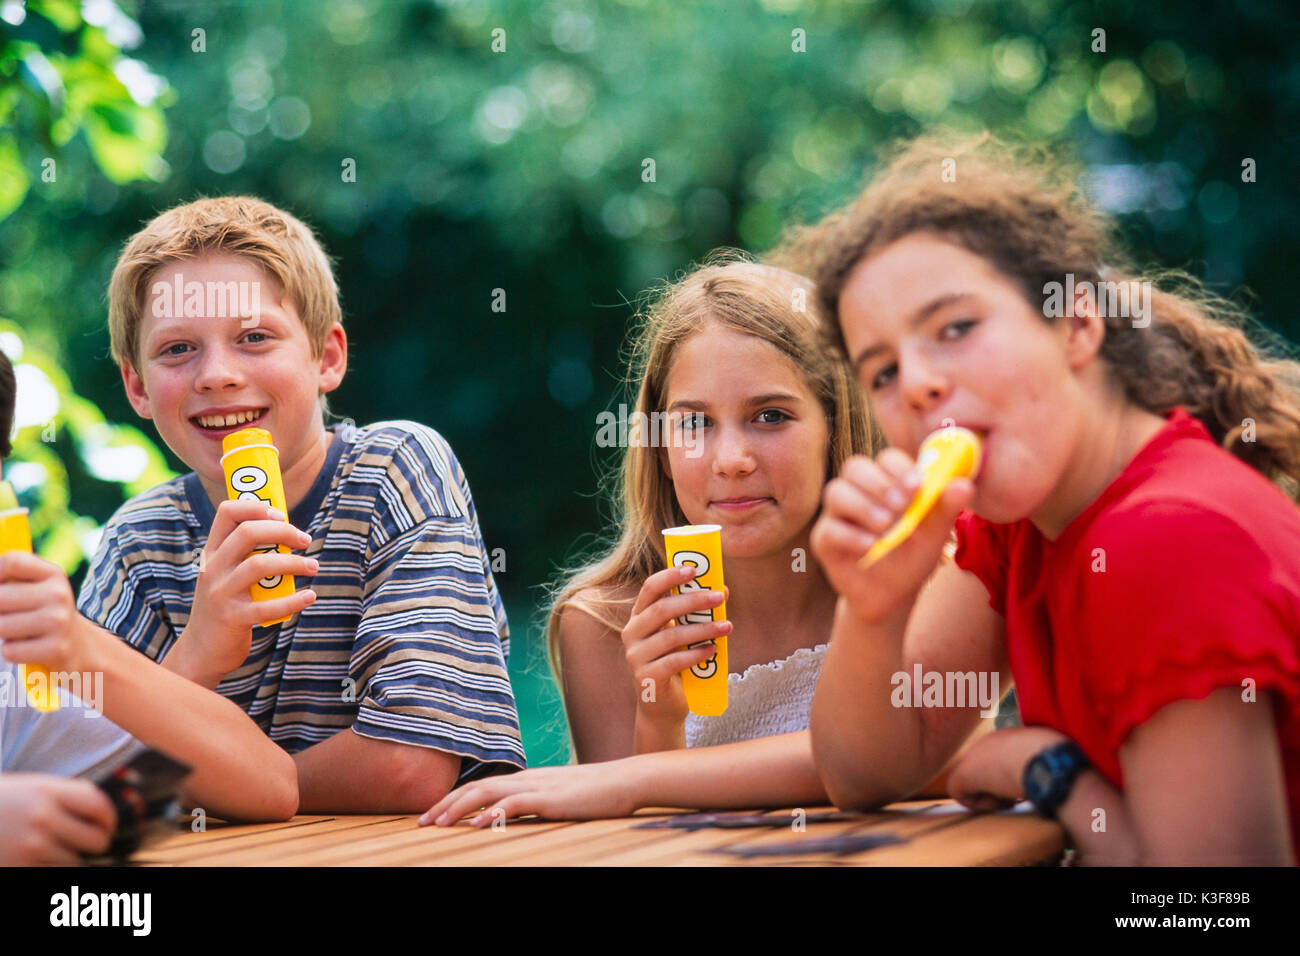 Gruppe von Kindern/Jugendlichen während Eis essen Stockfoto